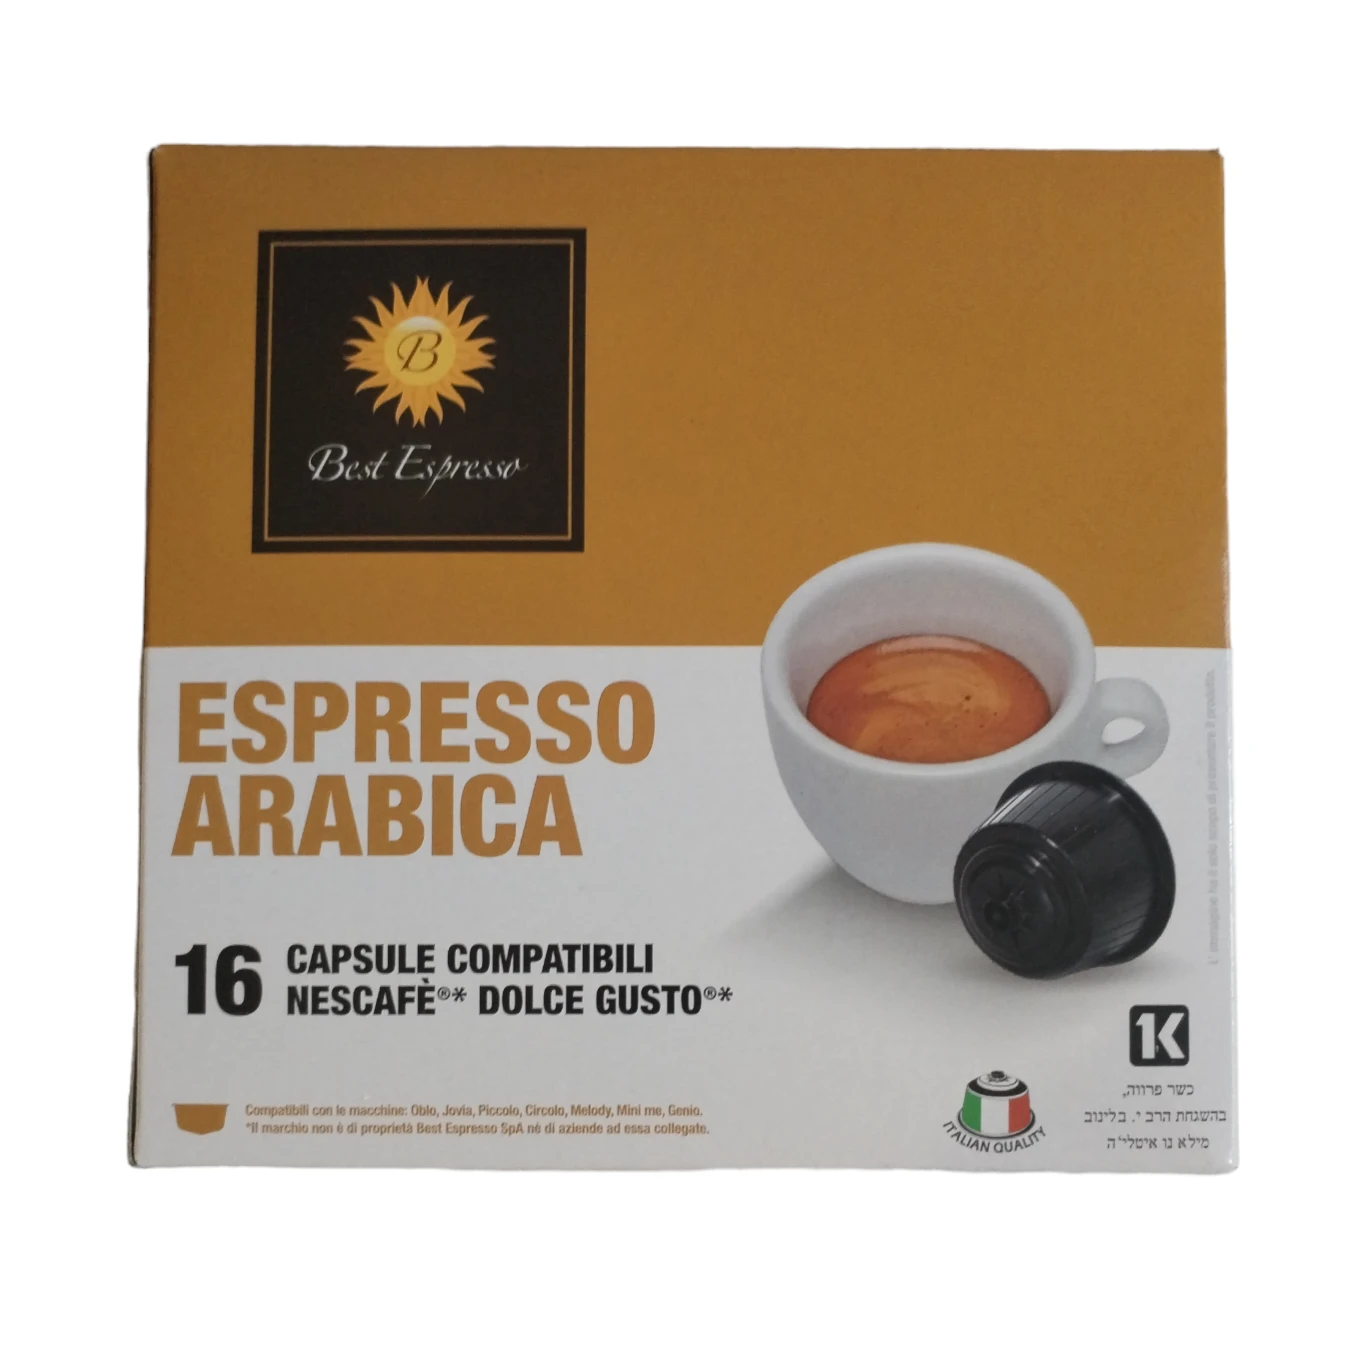 1555-espressoarabicadolcegusto-17066123470847.png